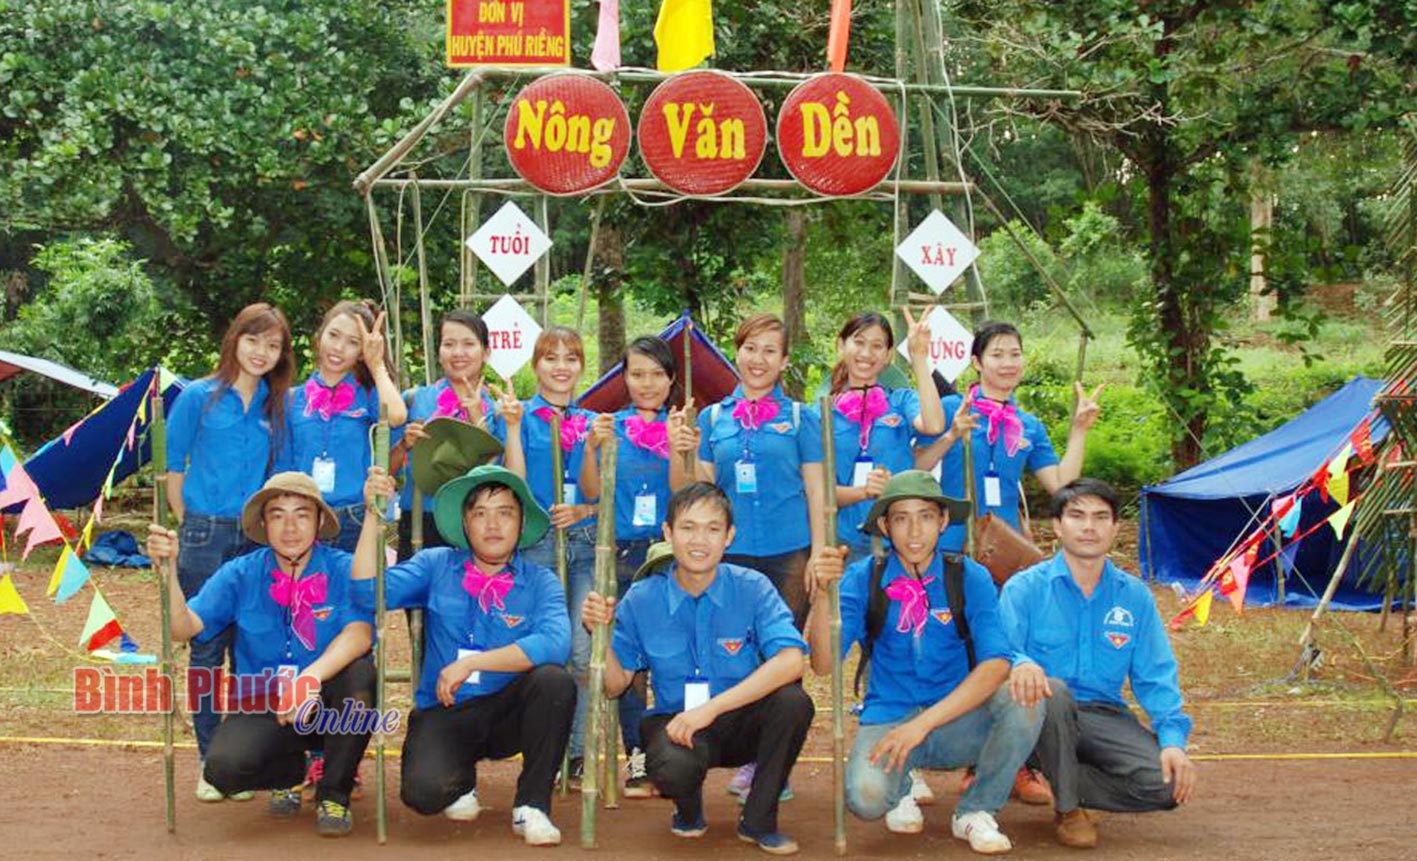 Một ngày trải qua nhiều hoạt động rèn luyện kỹ năng hội, các trại sinh của tiểu trại Nông Văn Dền (Phú Riềng) vẫn luôn tươi cười để đón nhận những hoạt động mới.